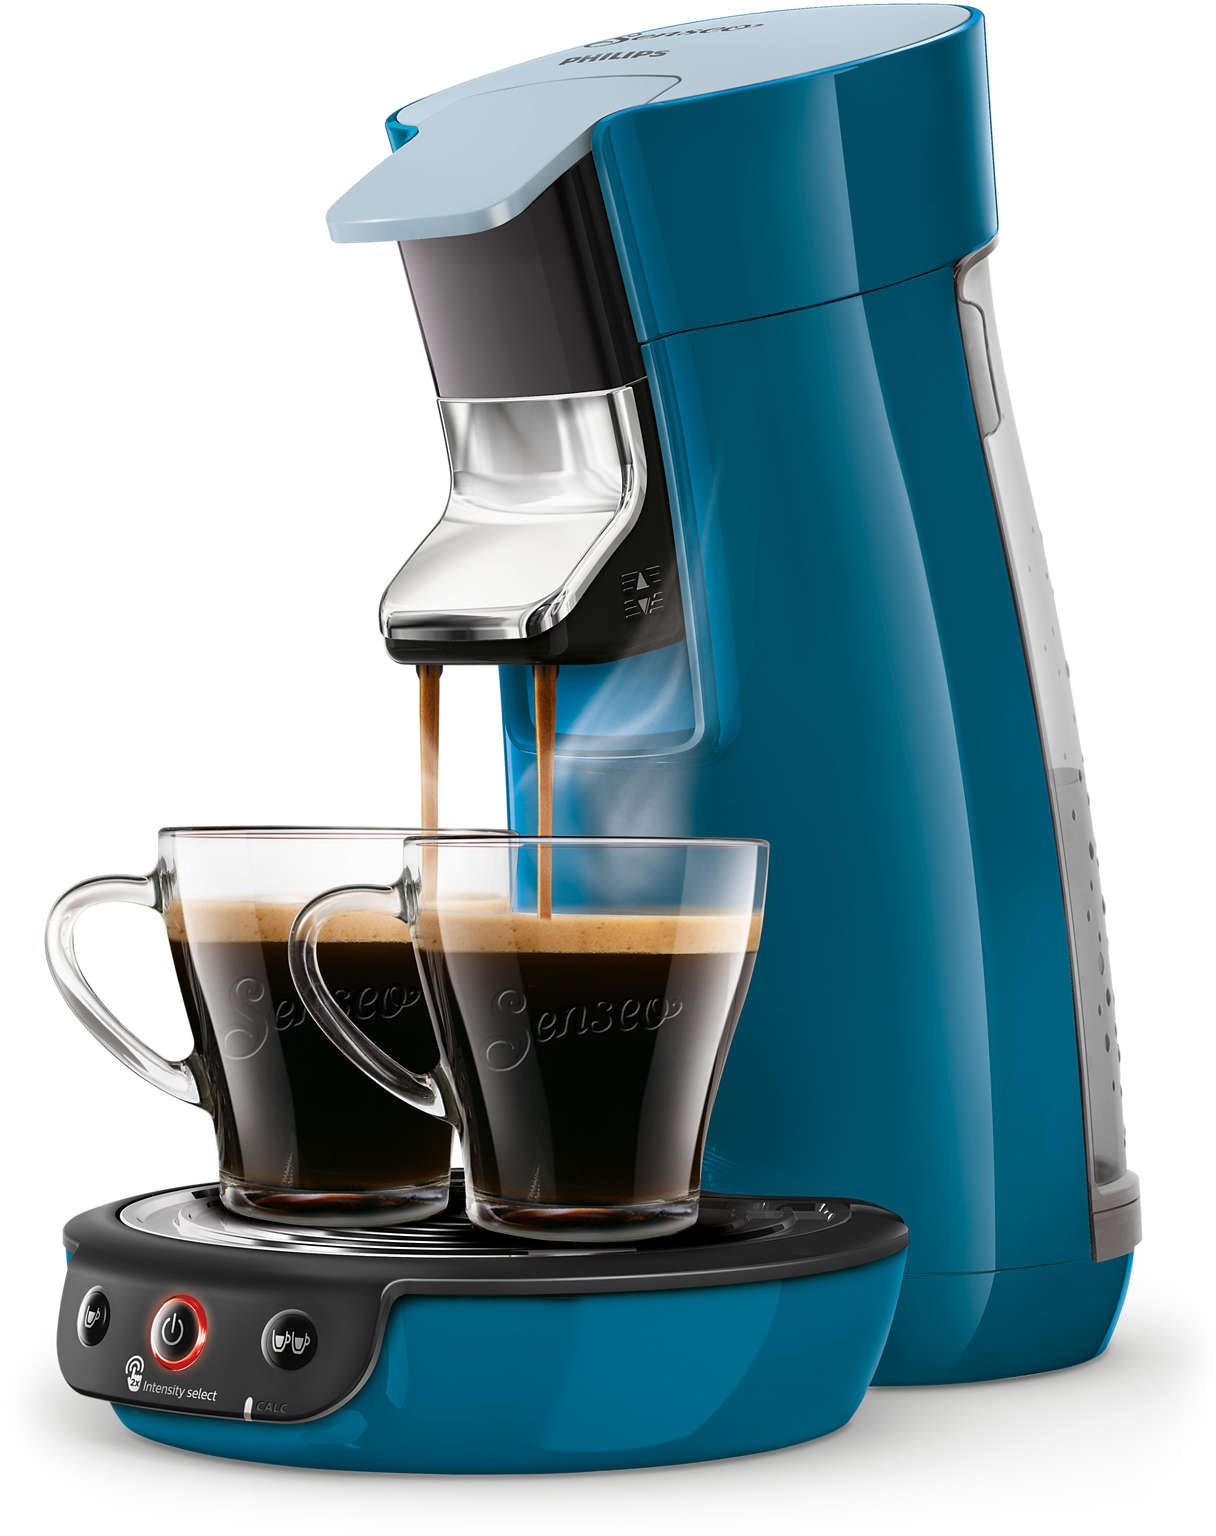 Machine à café dosette SENSEO SELECT Philips CSA240/21, Intensity Plus,  Booster d'arômes, Crema plus, 1 à 2 tasses, ECO - Cdiscount Electroménager